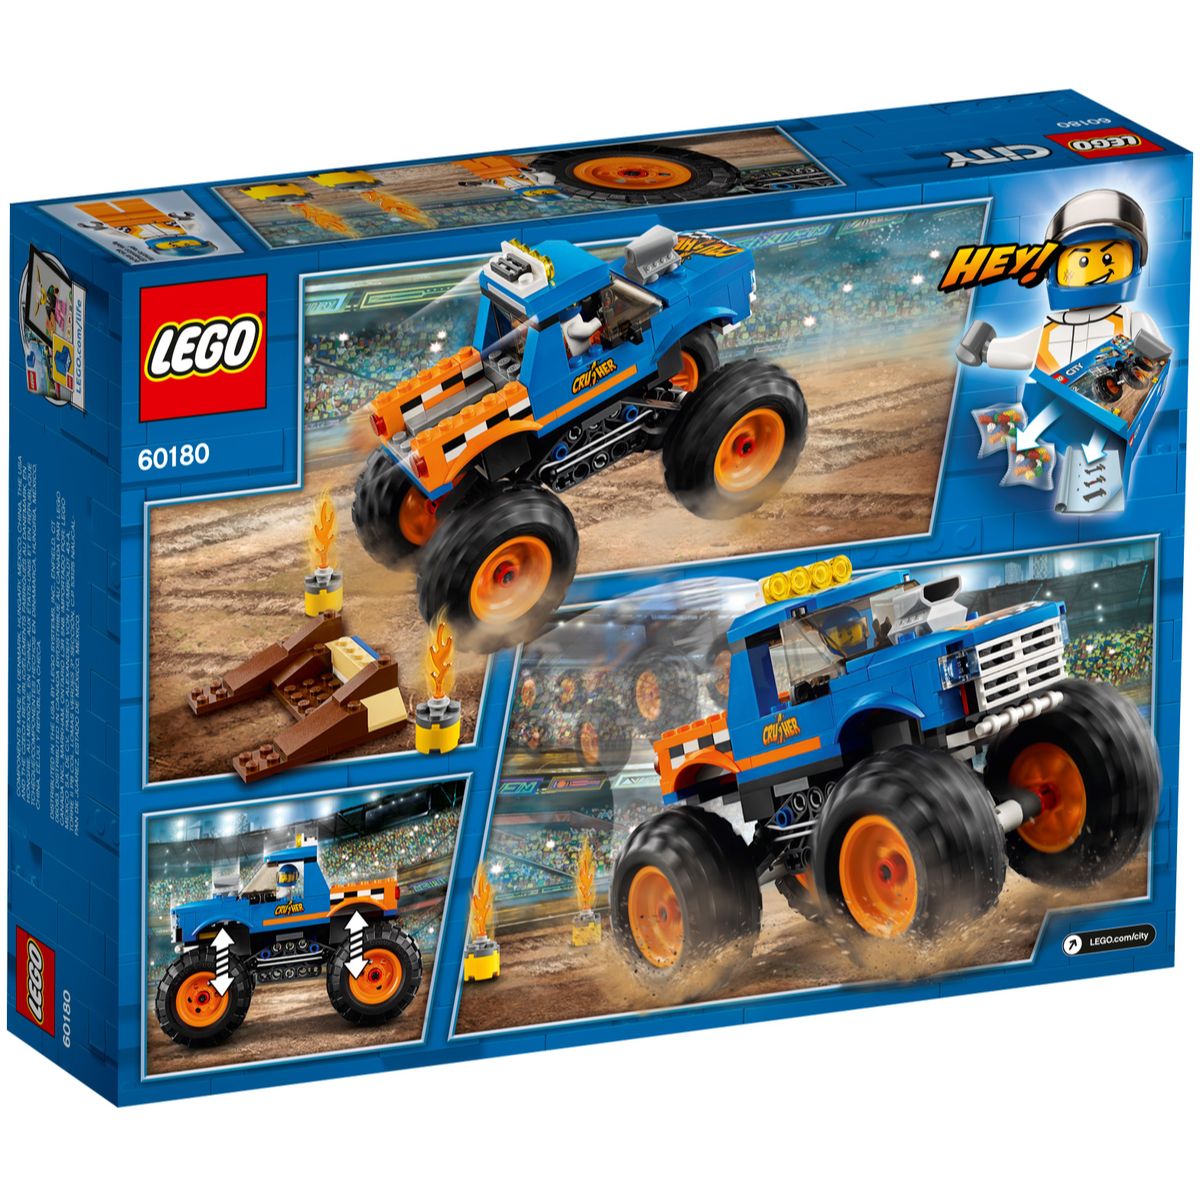 LEGO City Monster Truck Set 60180